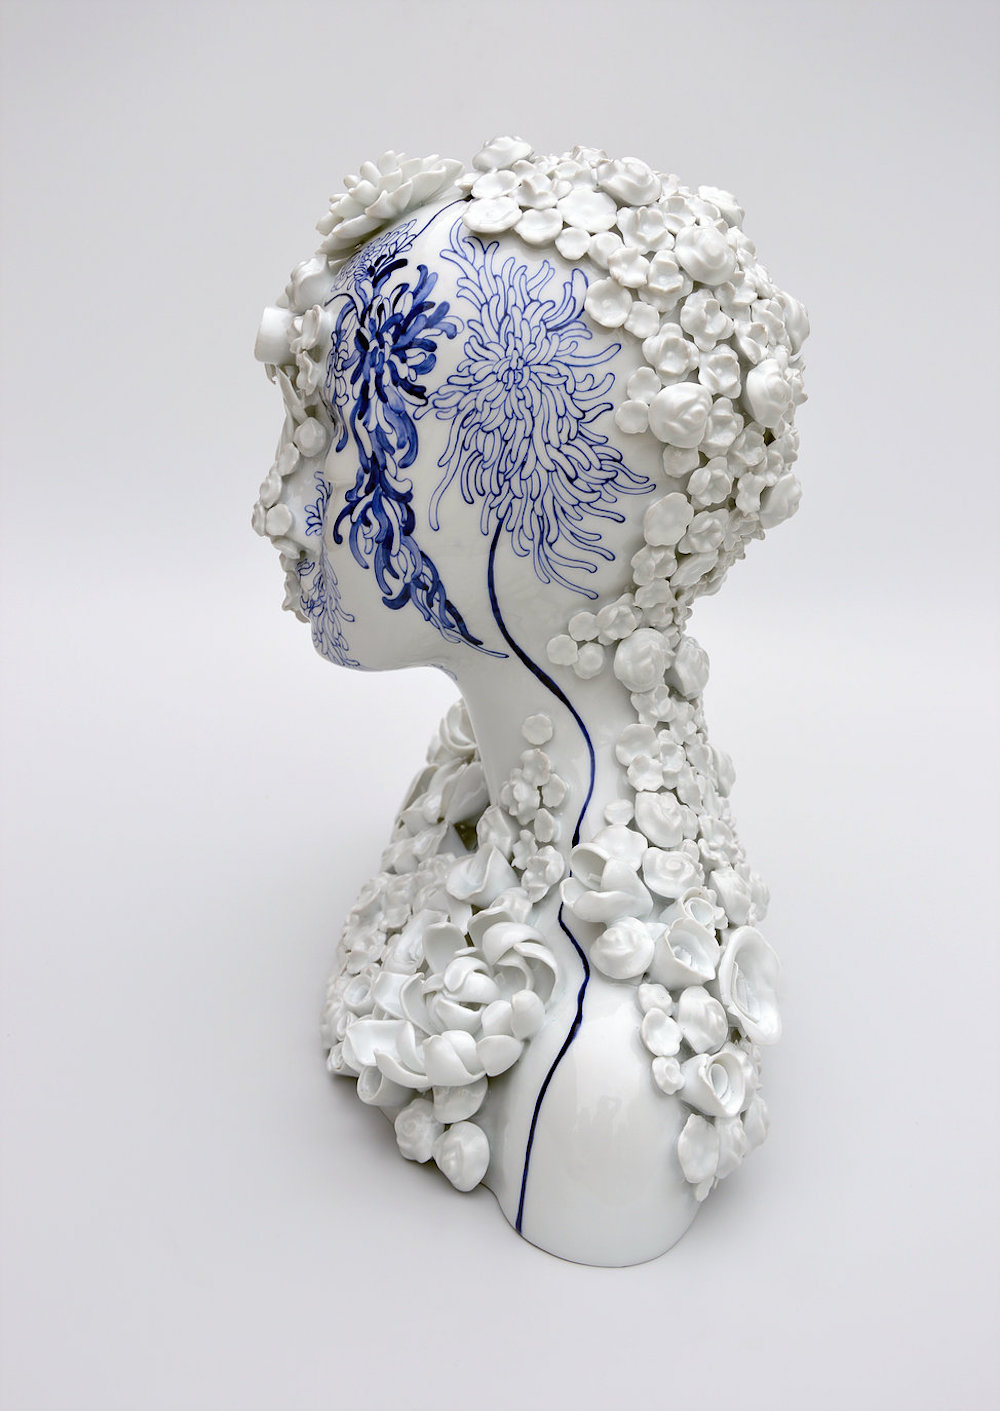 Surreal Figurative Porcelain Sculptures By Juliette Clovis 28